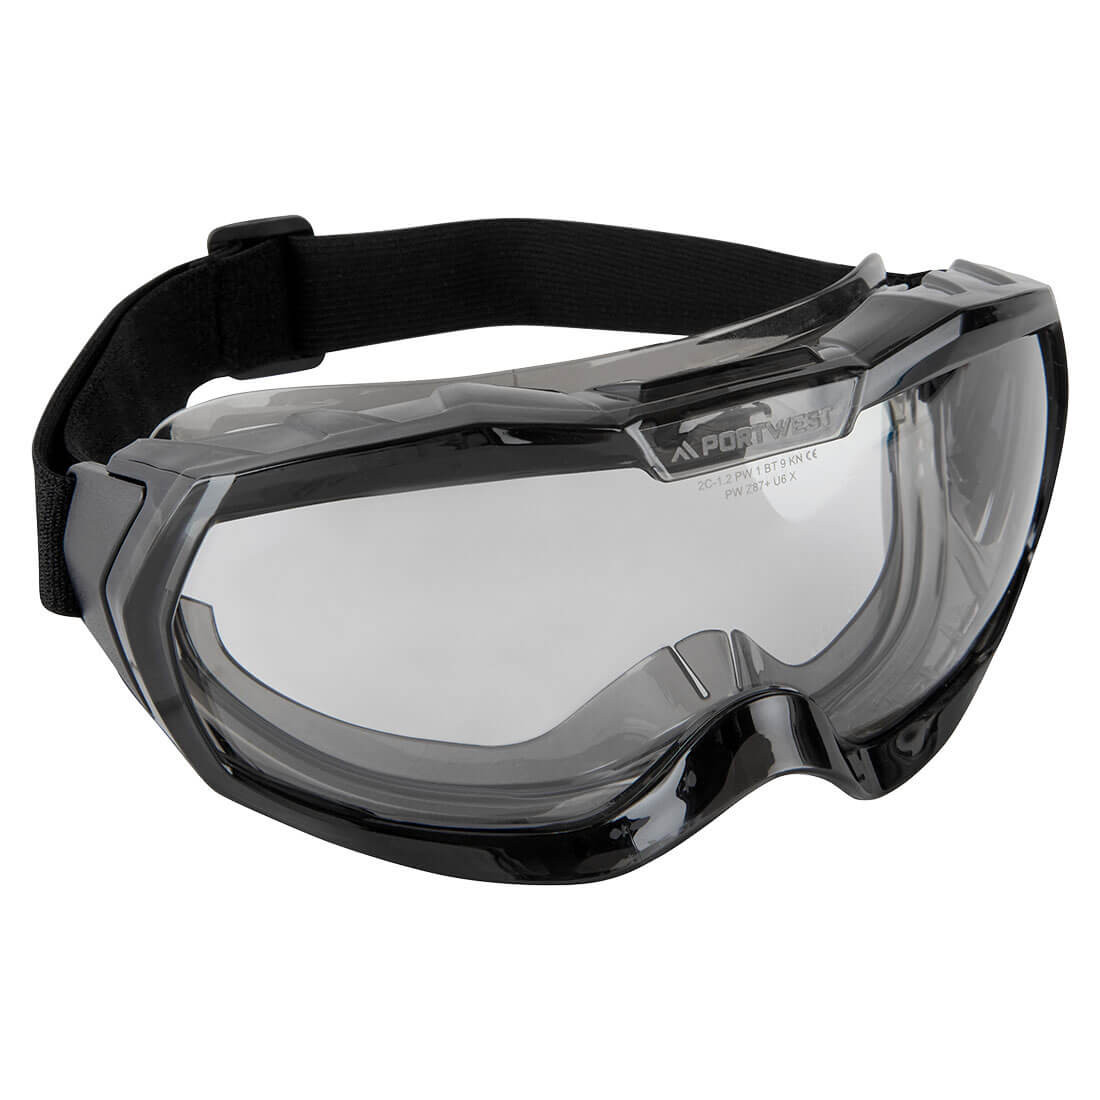 Gafas de seguridad ultraligeras, sin ventilación - Equipamientos de protección personal